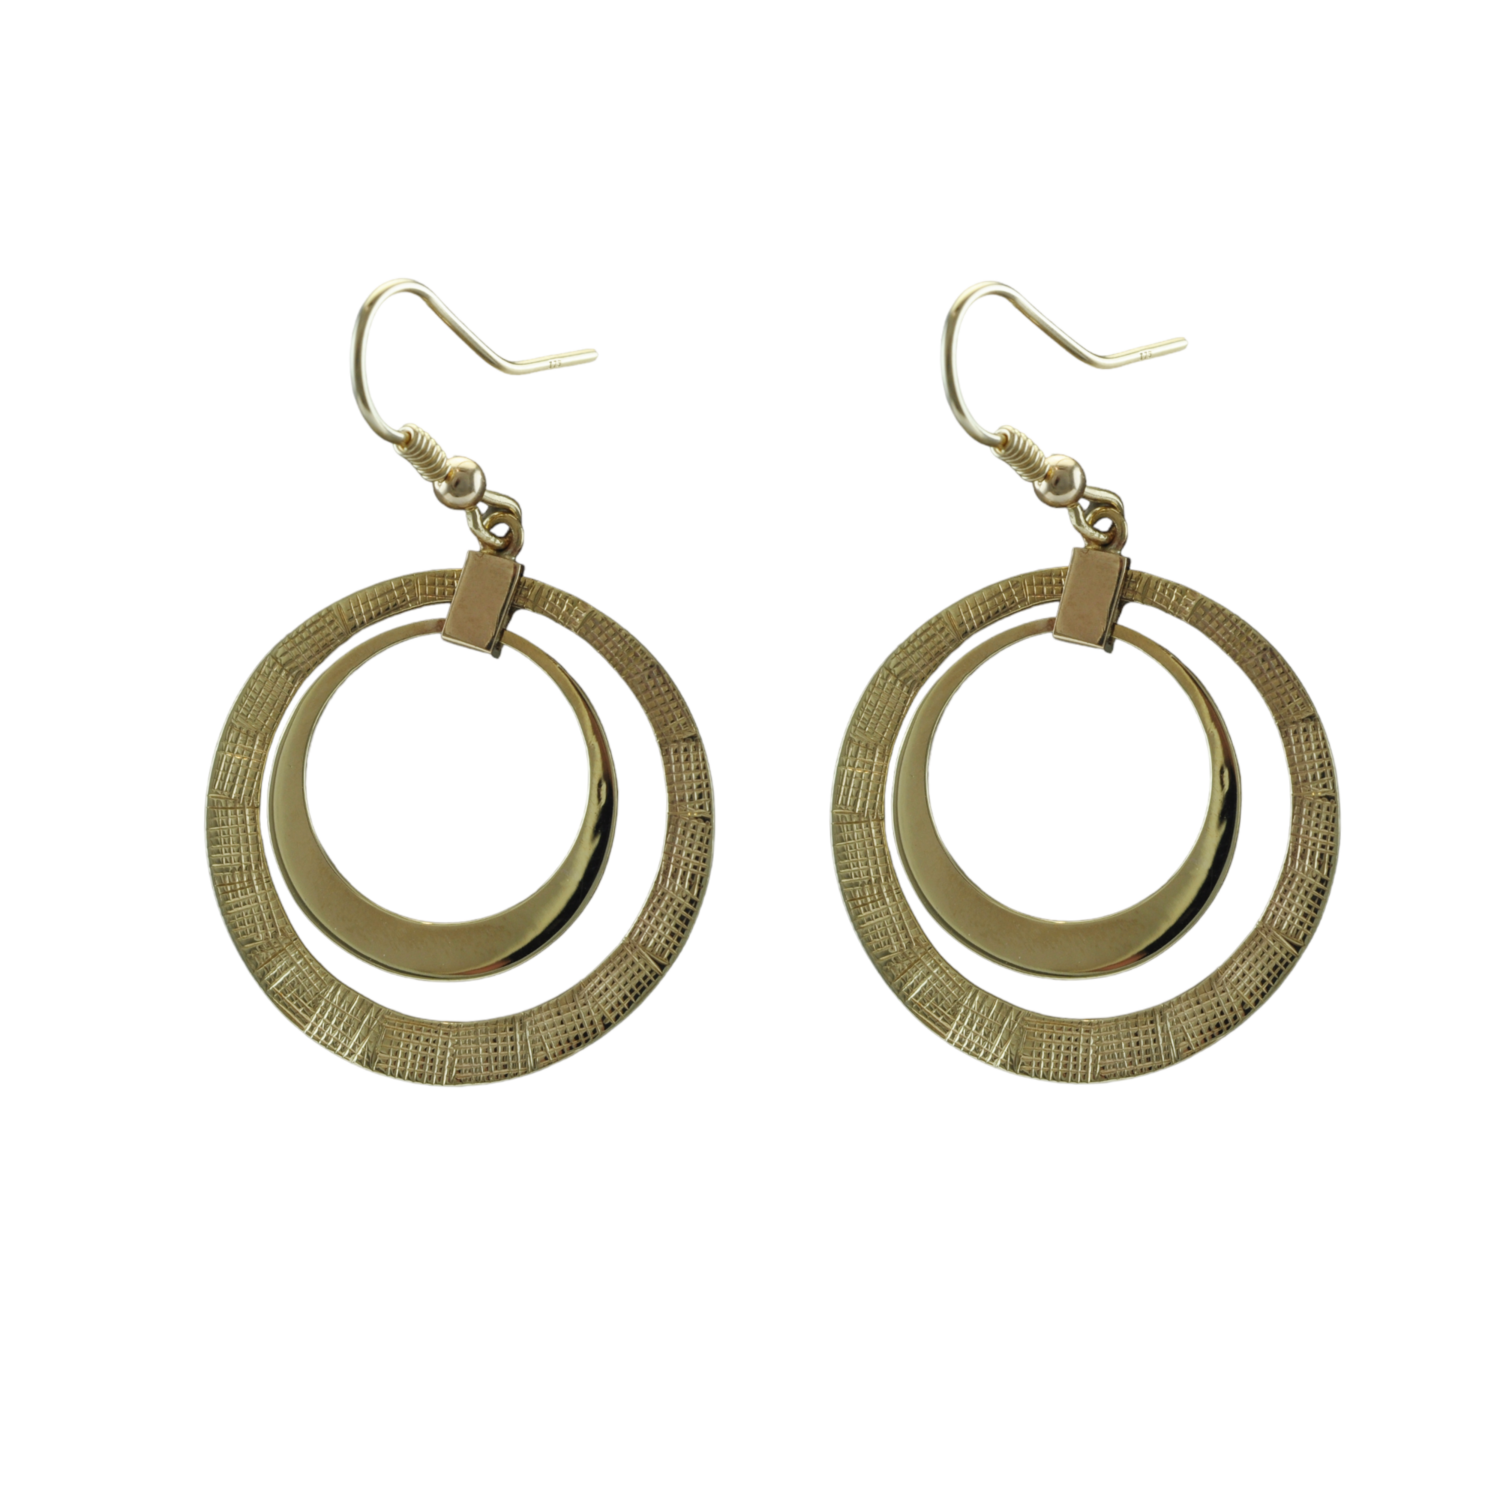 Circular Hoop earrings